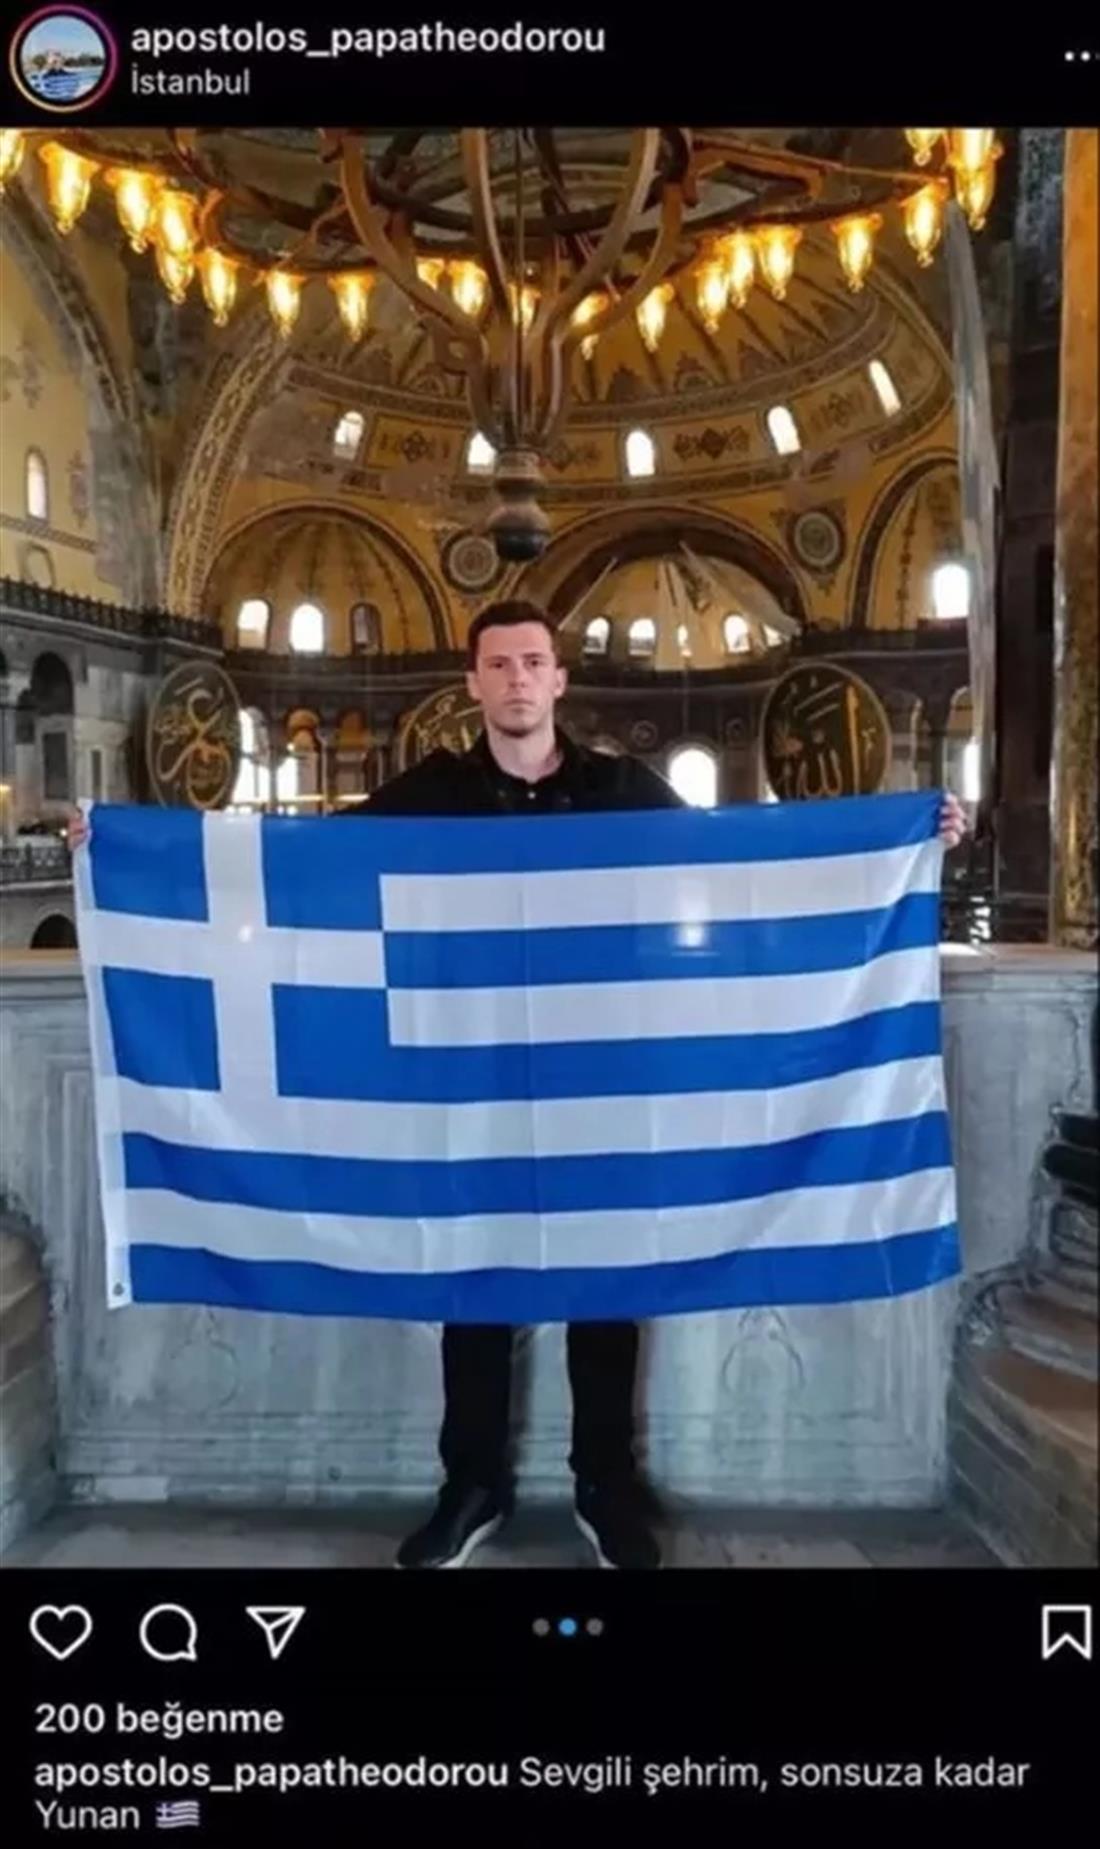 Αγία Σοφία - ελληνική σημαία - Έλληνας